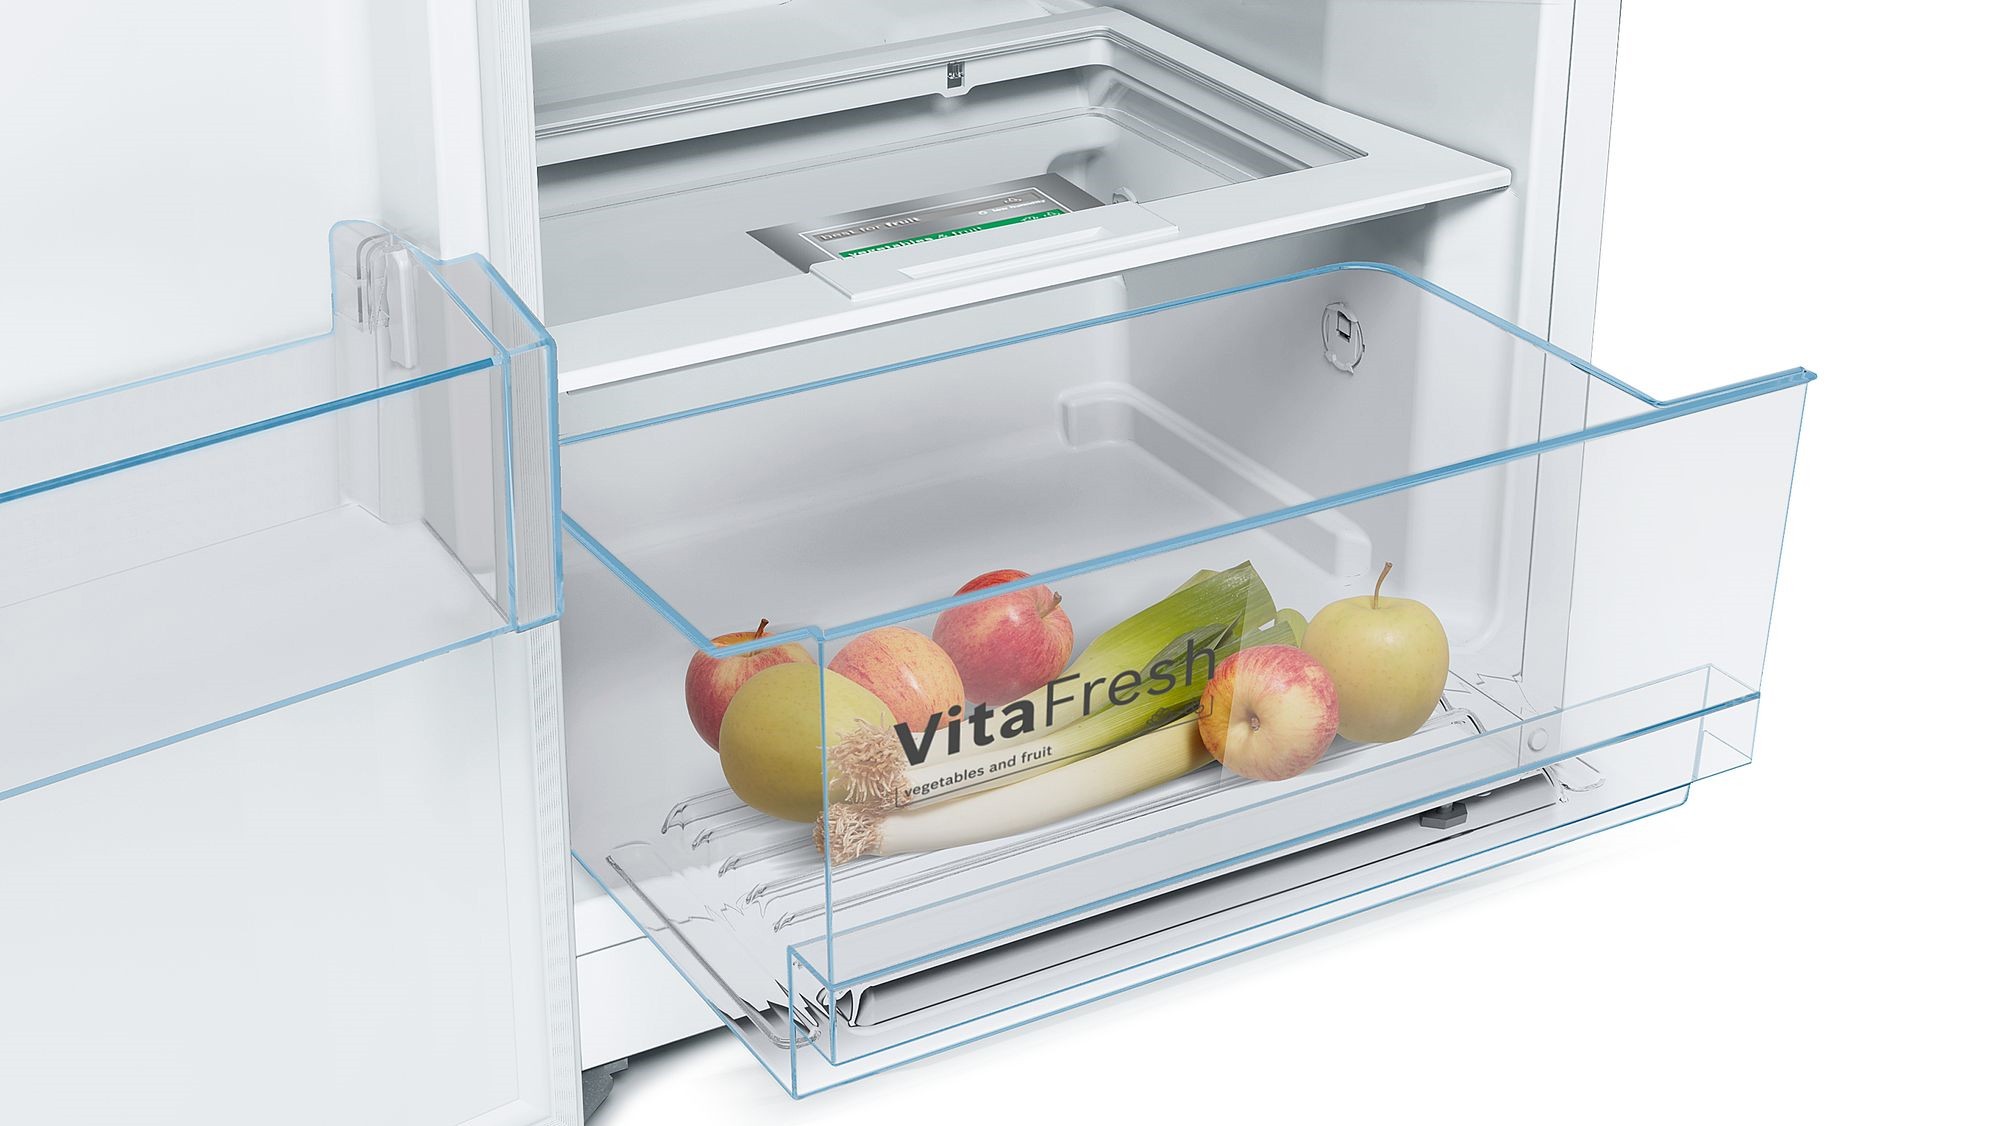 BOSCH Réfrigérateur 1 porte Série 4 Froid Brassé 324L Blanc - KSV33VWEP